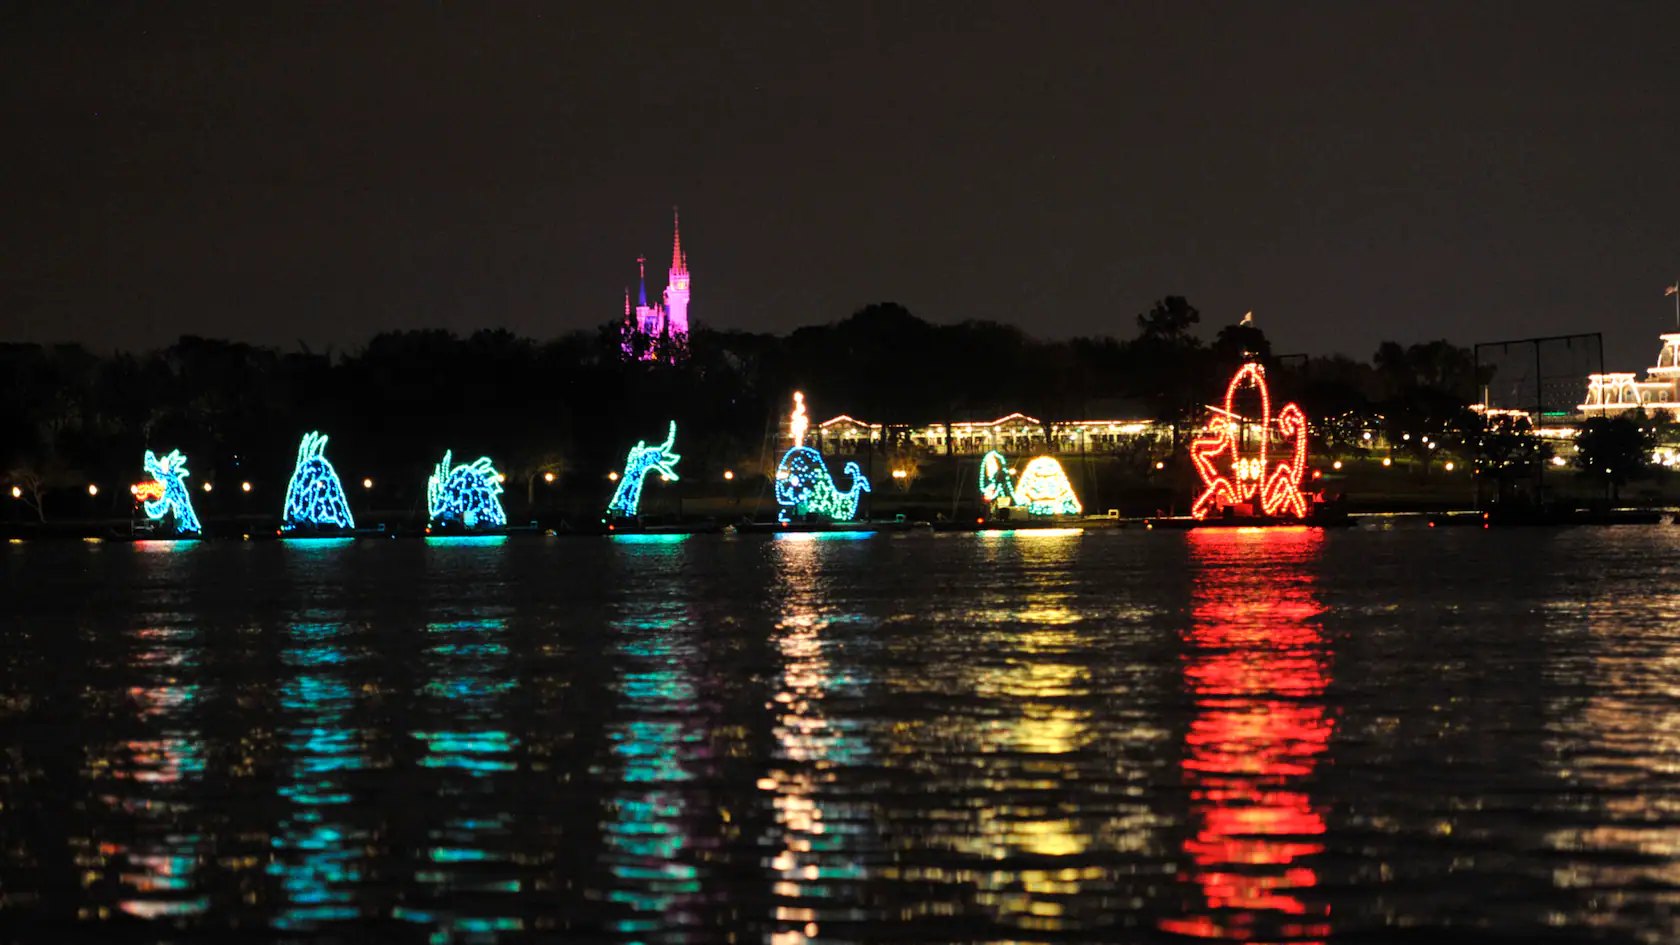 Une exposition nocturne de divers flotteurs thématiques illuminés sur l'eau, reflétant des couleurs vibrantes à la surface avec la silhouette d'un château et des arbres en arrière-plan, devient un spectacle aquatique électrique.